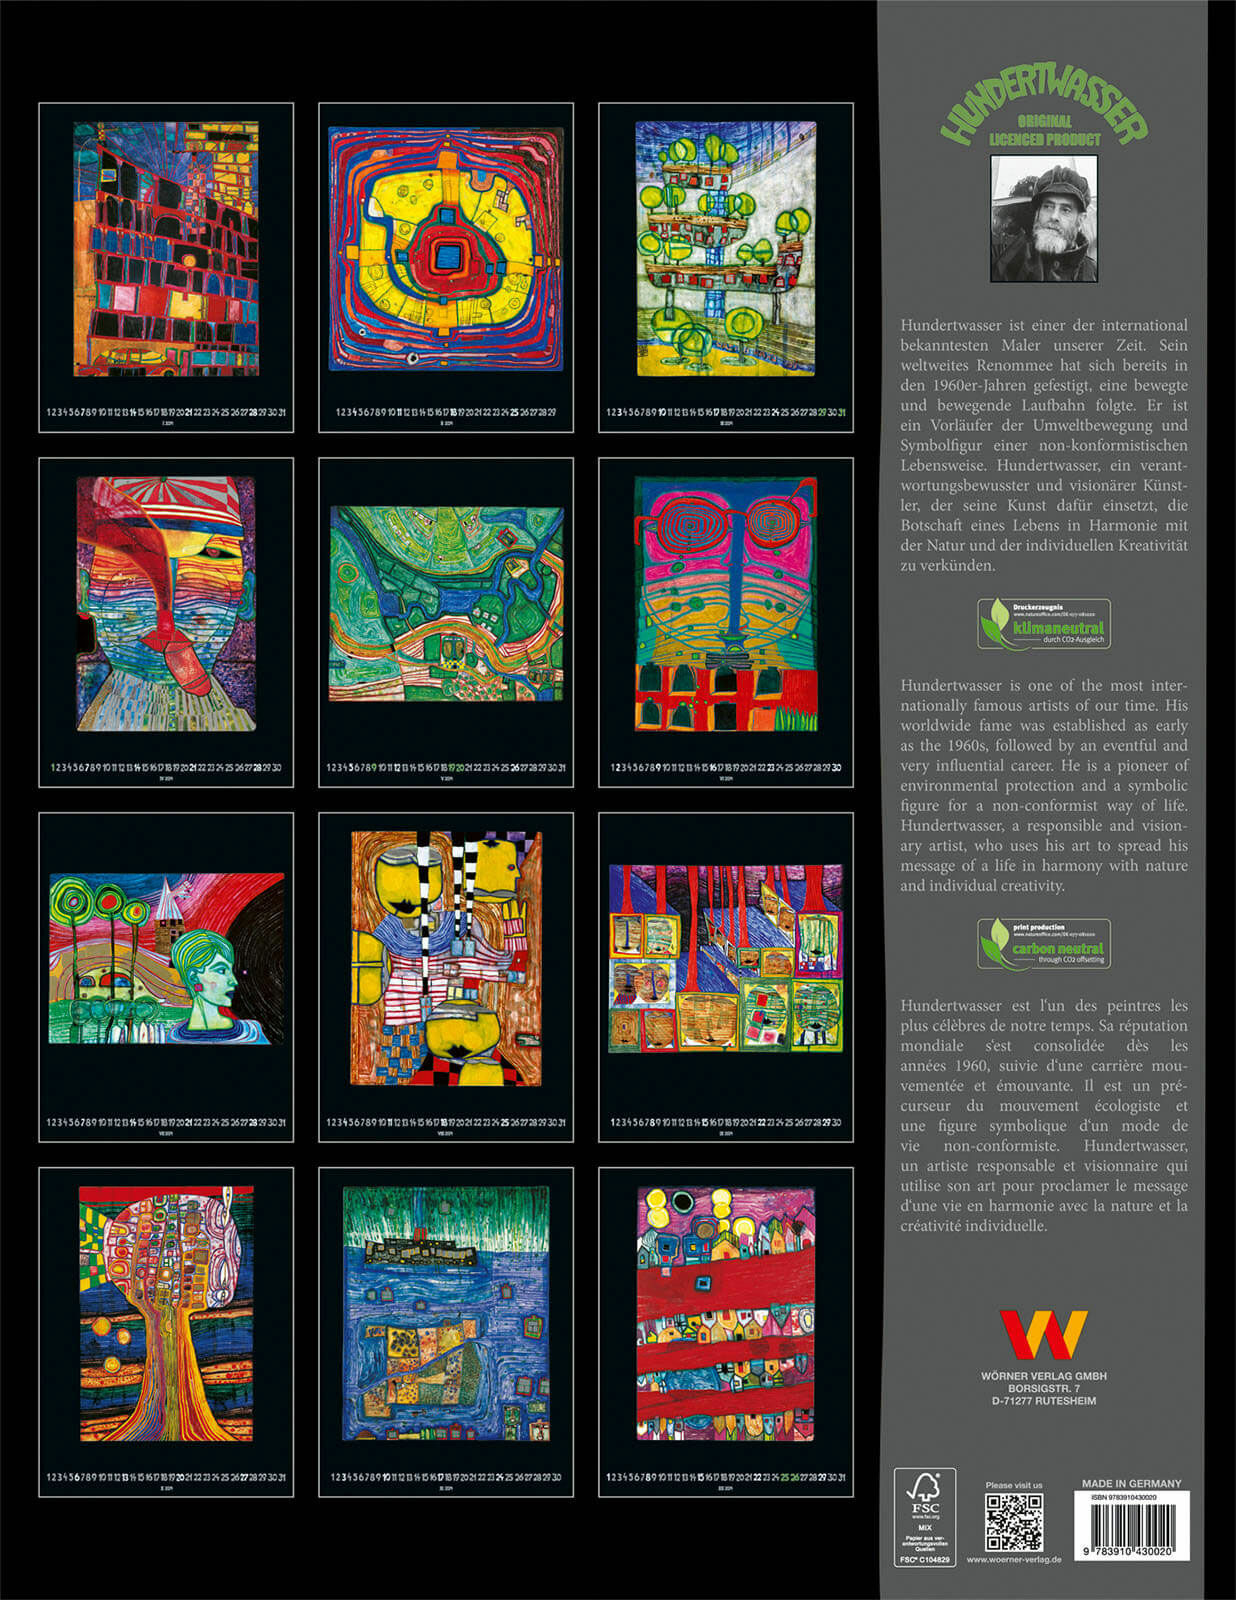 Künstlerkalender 2024 von Friedensreich Hundertwasser